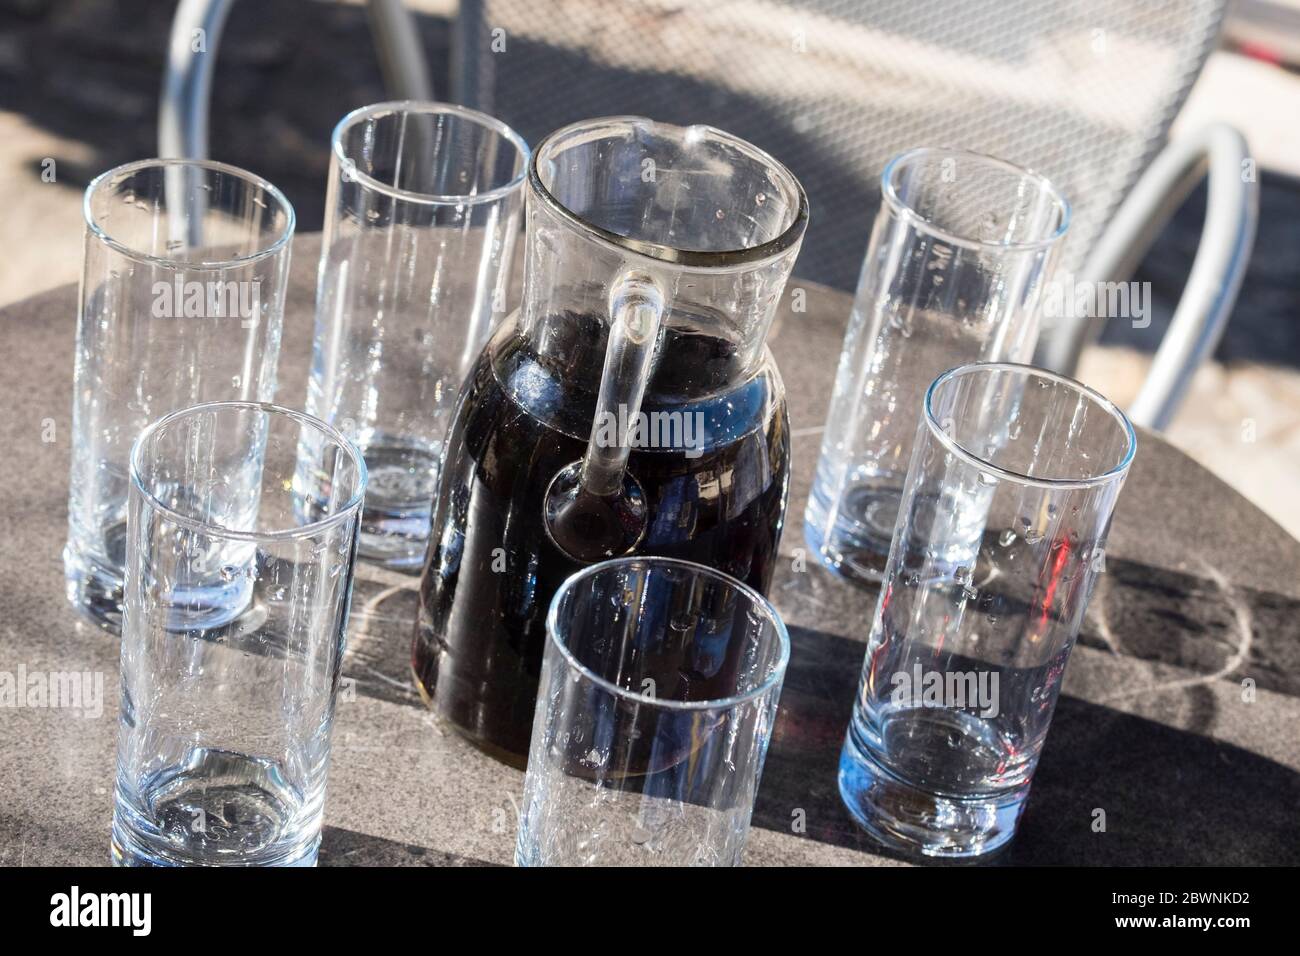 Vin croate fait maison dans une carafe de service avec 6 verres vides Banque D'Images